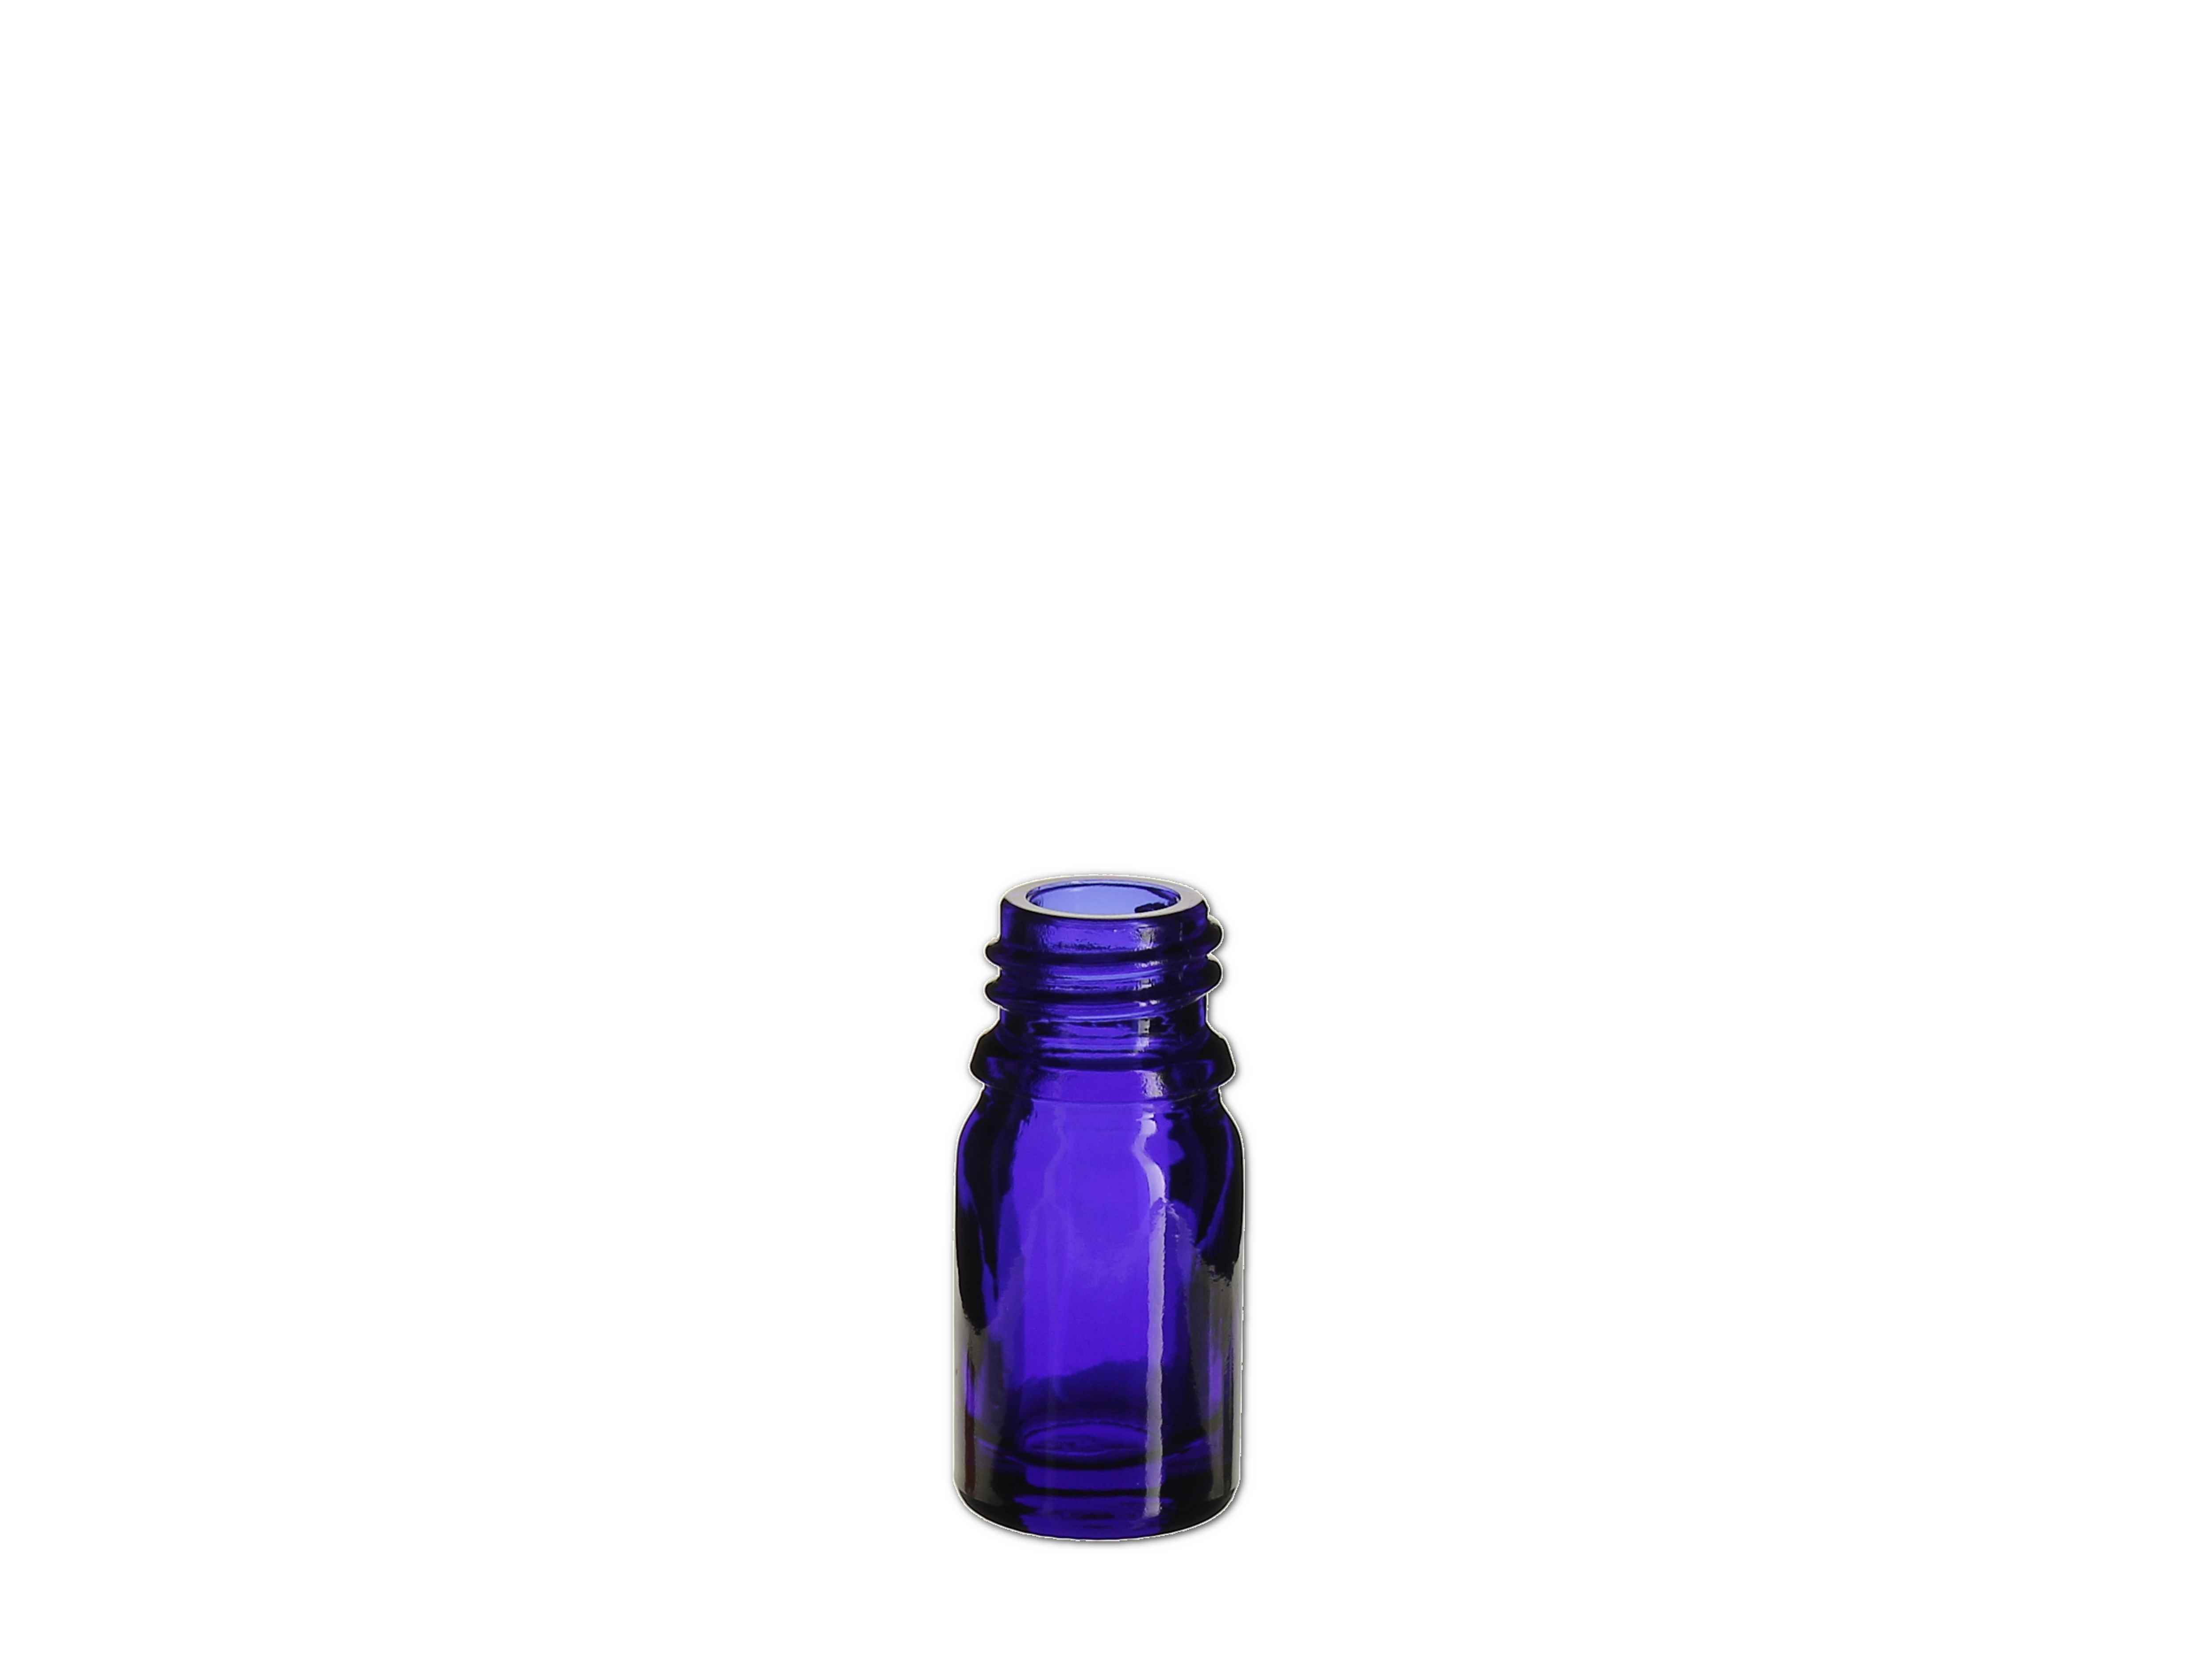    Flasche blau - GL18 - 5ml